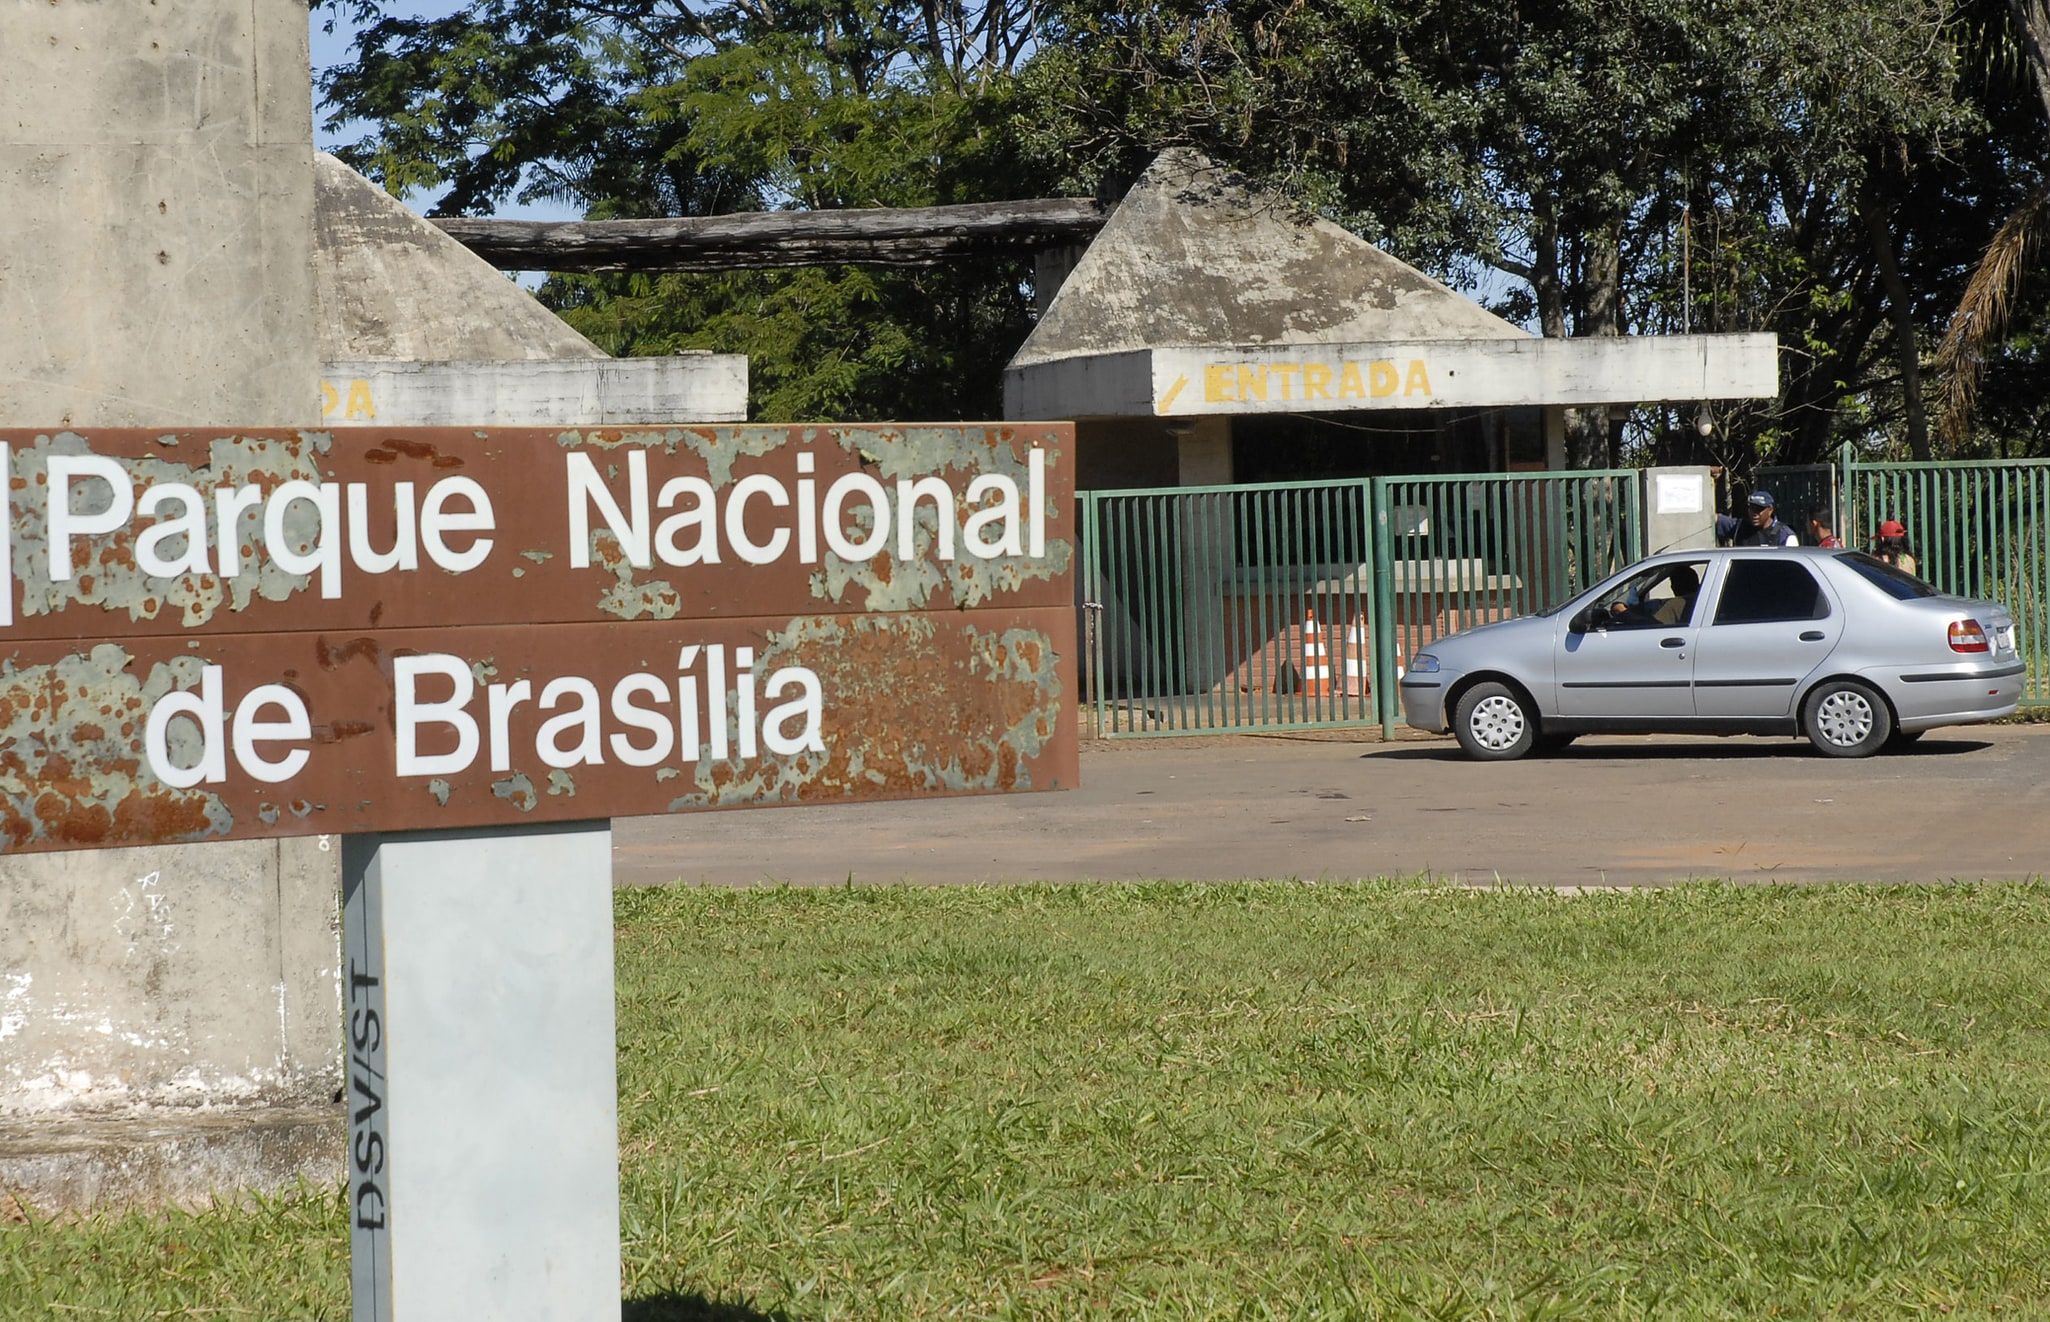 Brasília National Park, Brazil